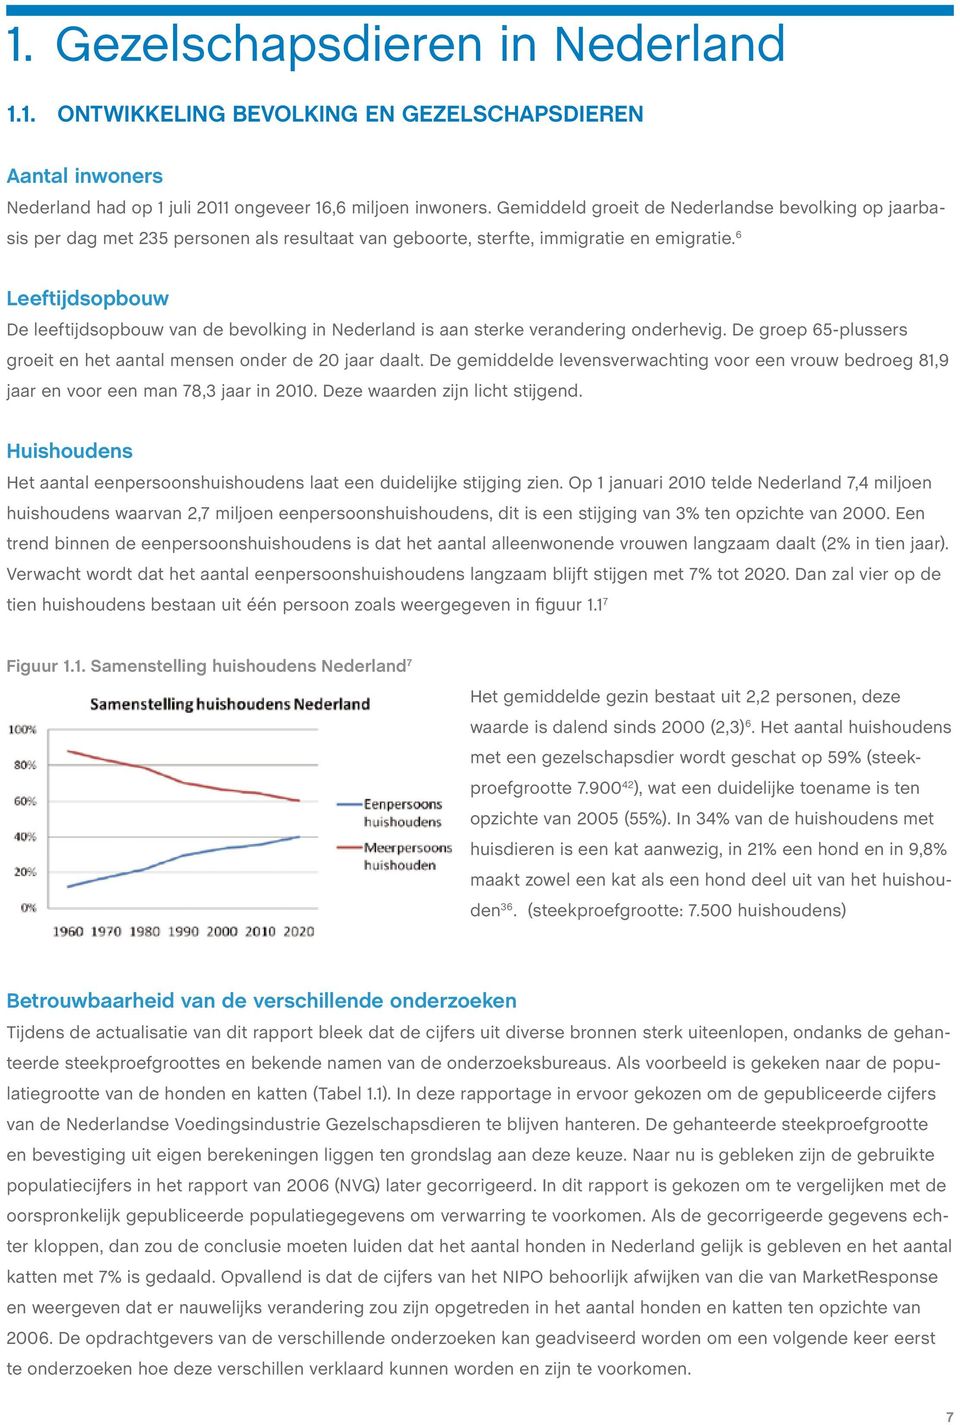 6 Leeftijdsopbouw De leeftijdsopbouw van de bevolking in Nederland is aan sterke verandering onderhevig. De groep 65-plussers groeit en het aantal mensen onder de 20 jaar daalt.